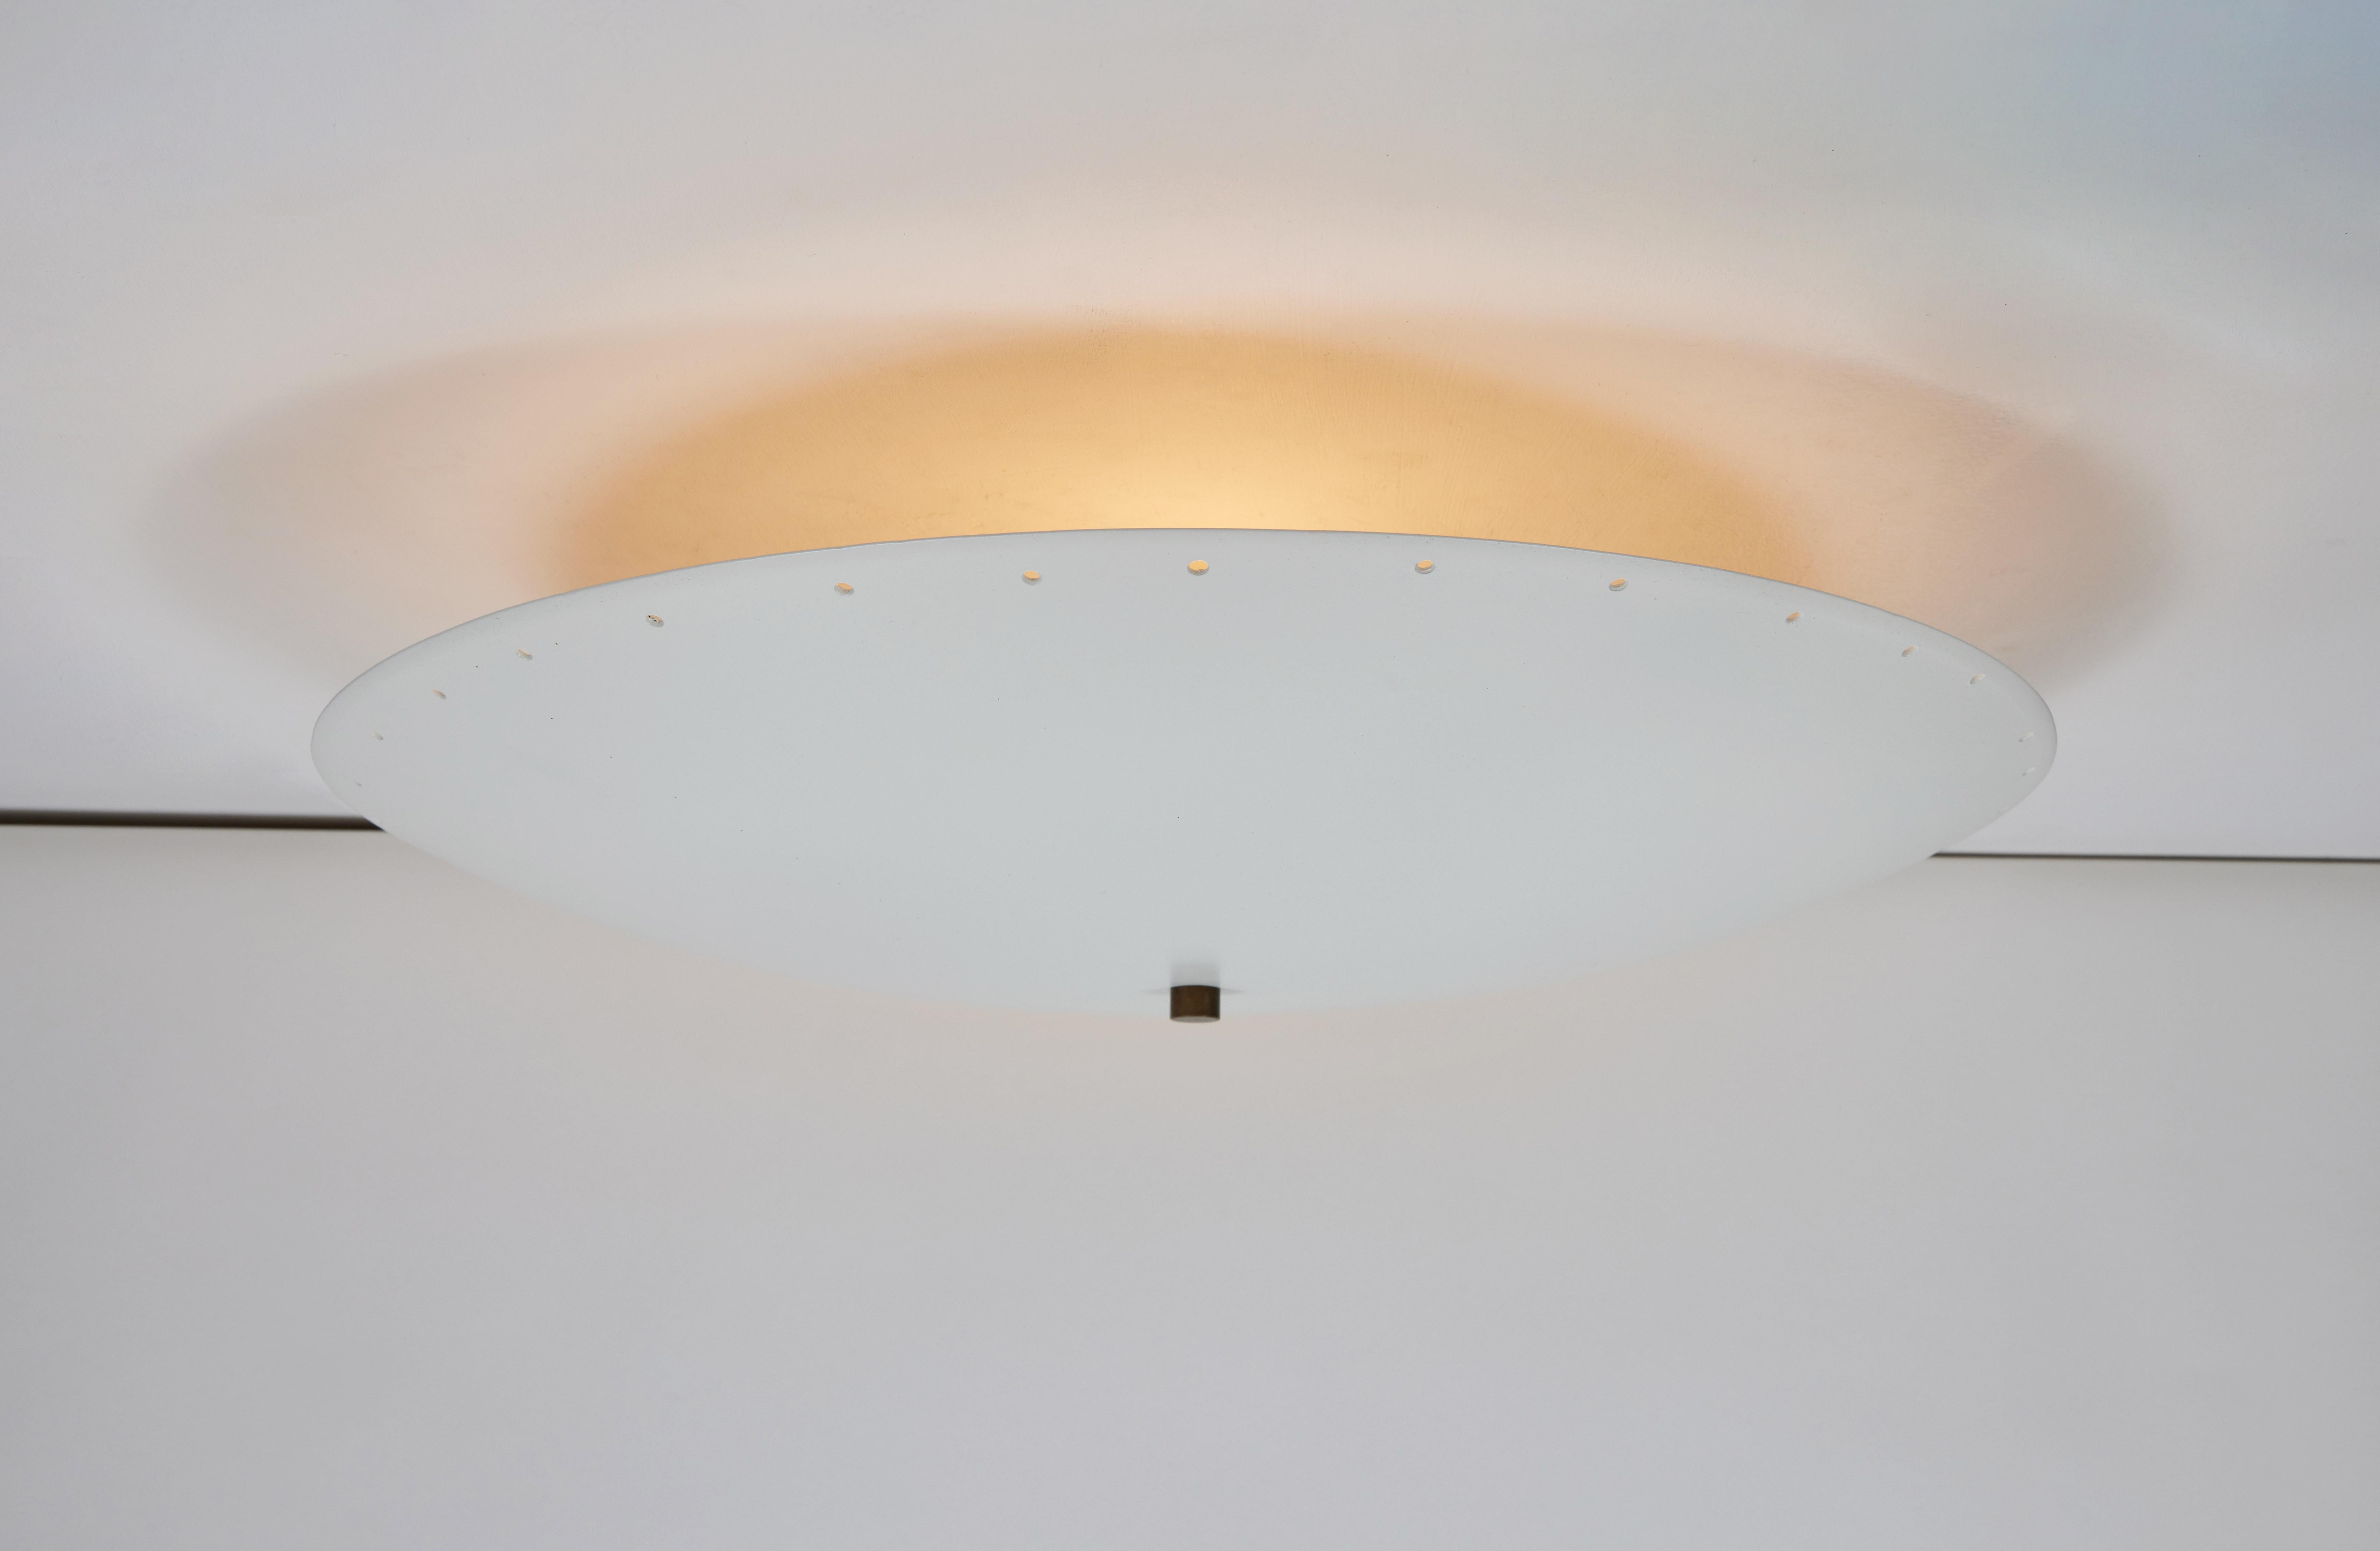 Perforierte Kuppel-Deckenleuchte 'Nina' in Weiß von Alvaro Benitez.

Die von dem in Los Angeles ansässigen Designer und Beleuchtungsprofi Alvaro Benitez handgefertigten, äußerst raffinierten Tischleuchten erinnern an die kultigen italienischen